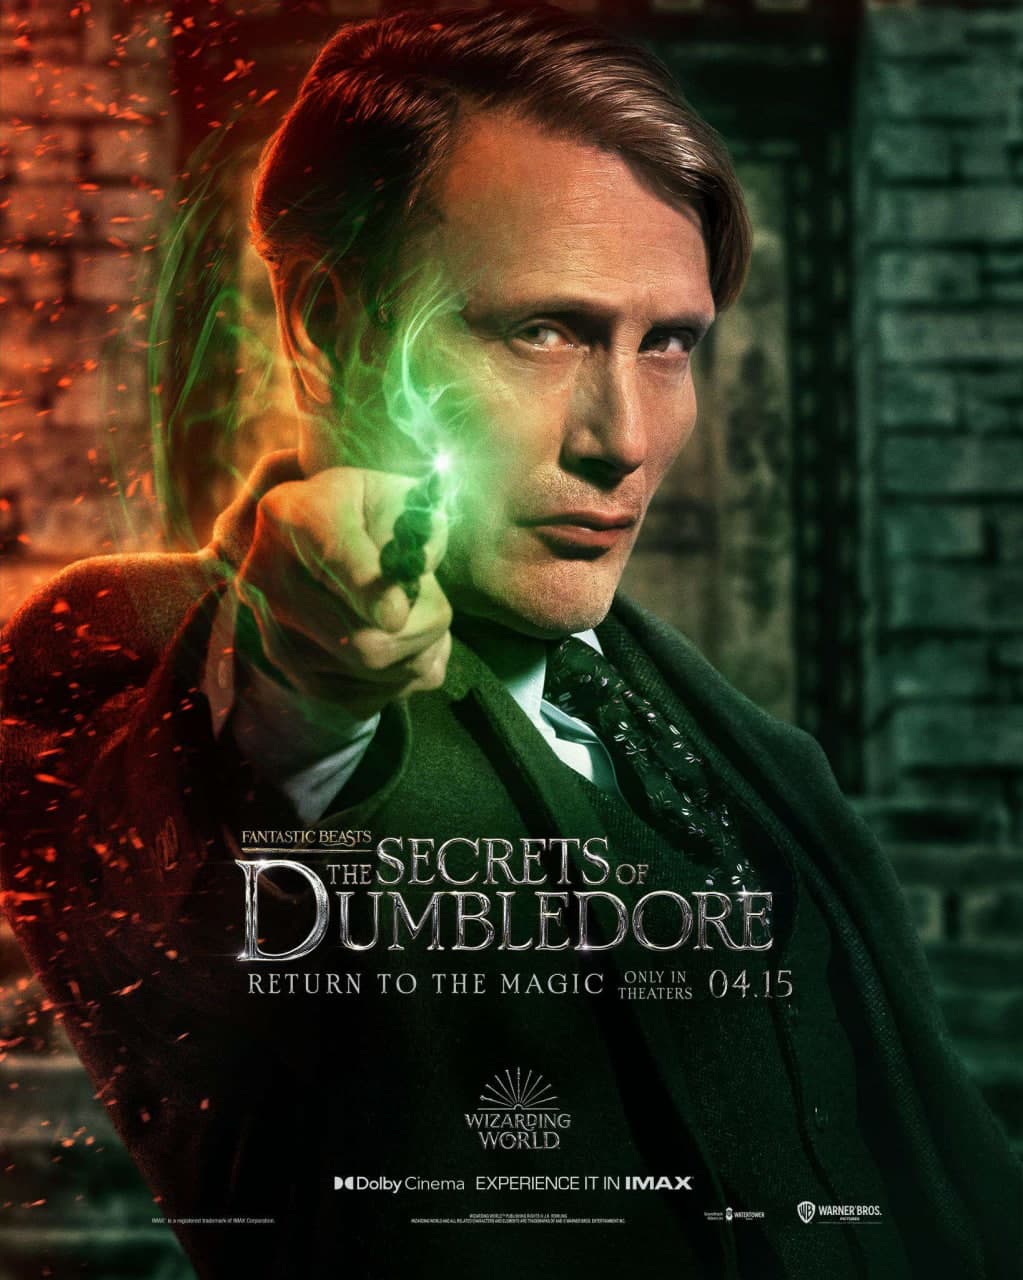 مدس میکلسن در نقش گریندل والد در پوستر شخصیت فیلم Fantastic Beasts: The Secrets of Dumbledore